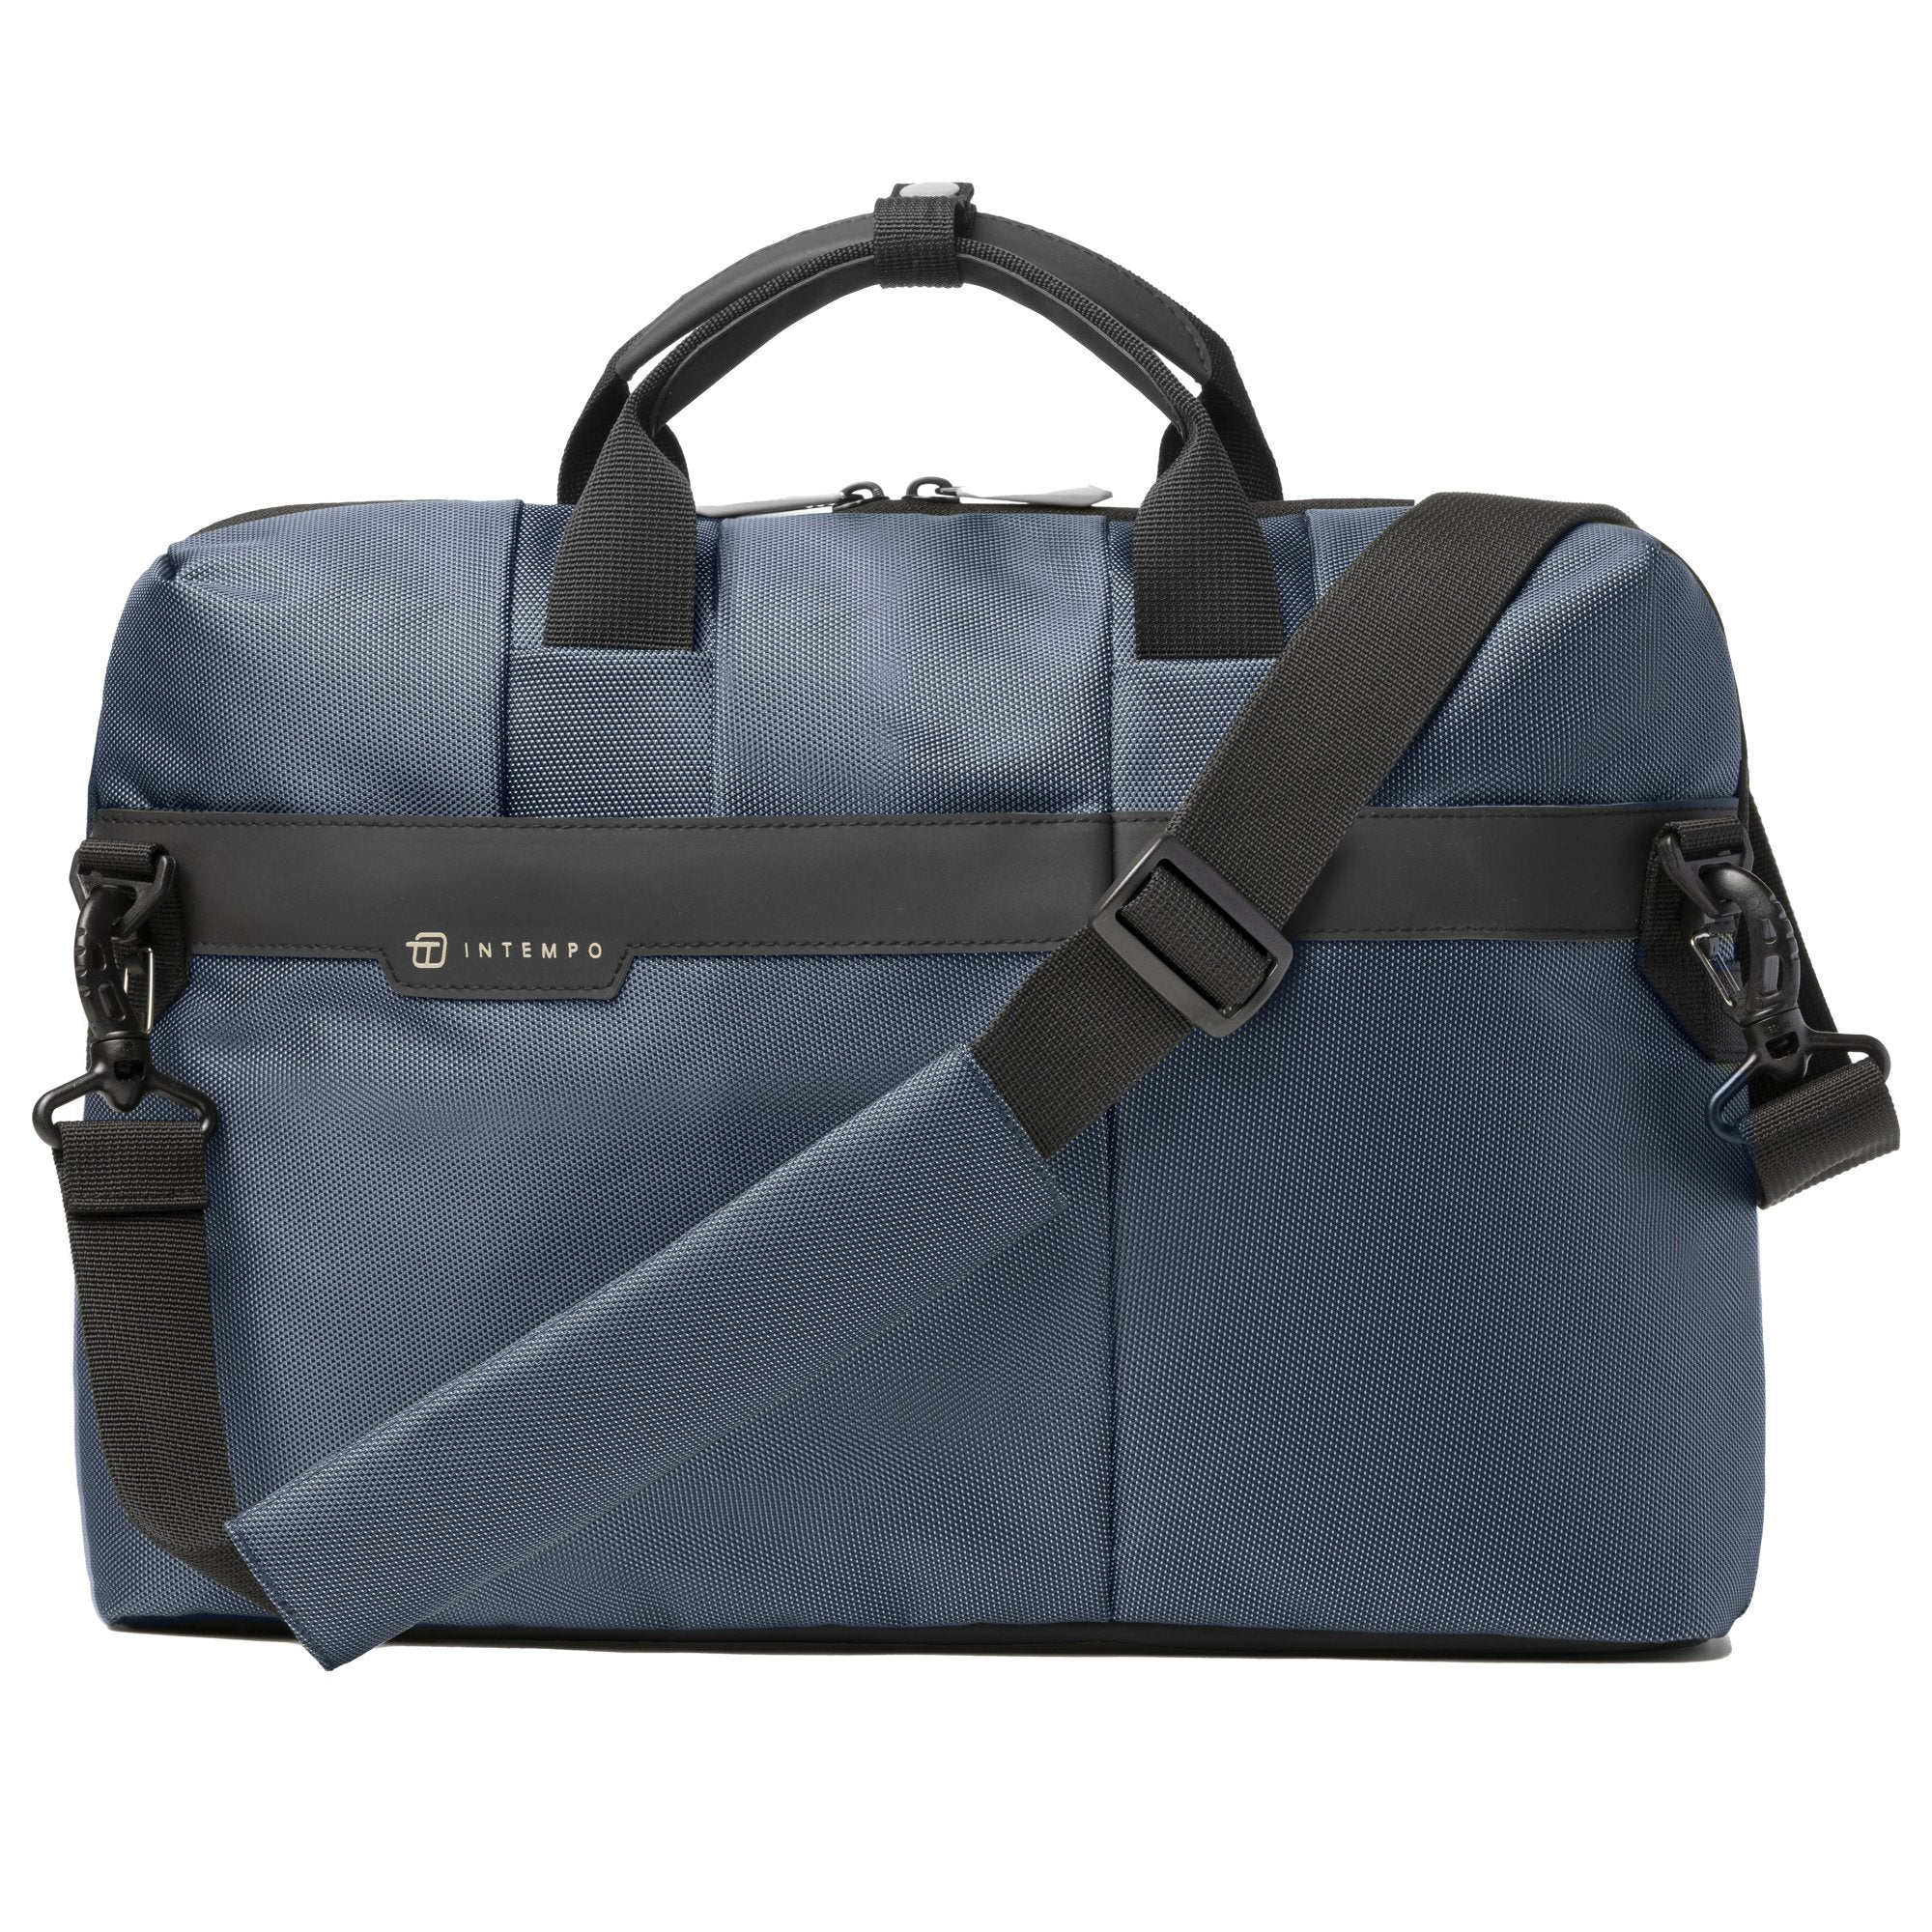 in-tempo-borsa-office-bag-job-slim-dim-43x33x10cm-tessuto-tecnico-blu-intempo